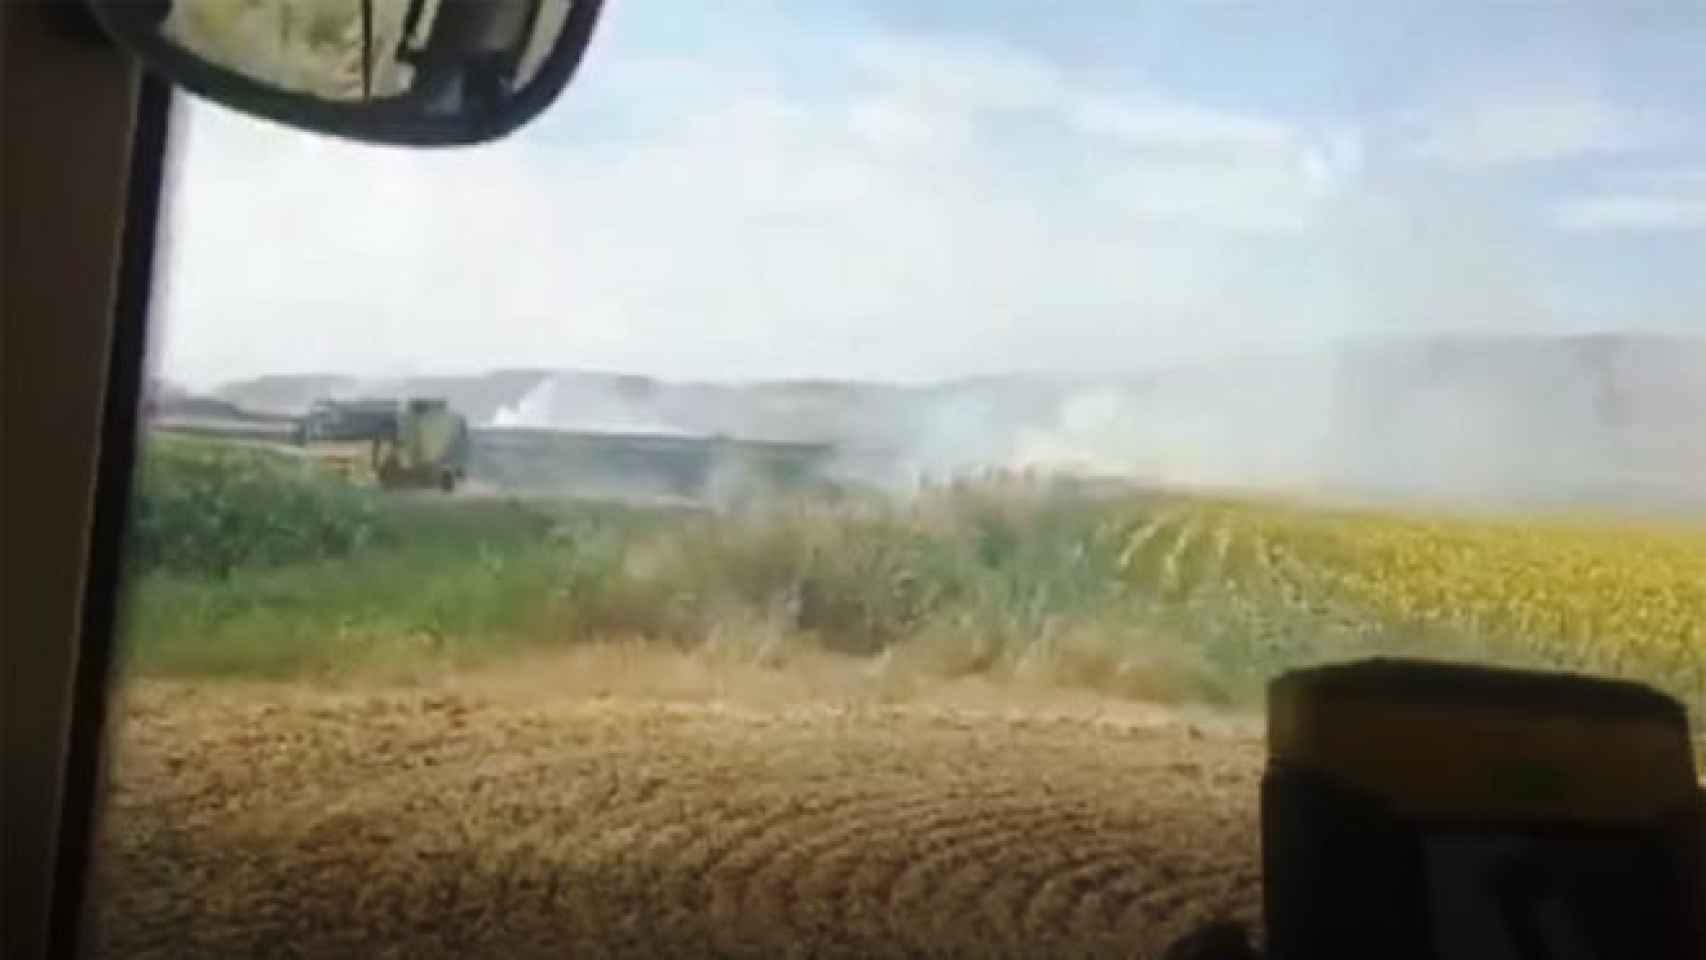 Los agricultores hicieron frente al incendio con sus propios recursos